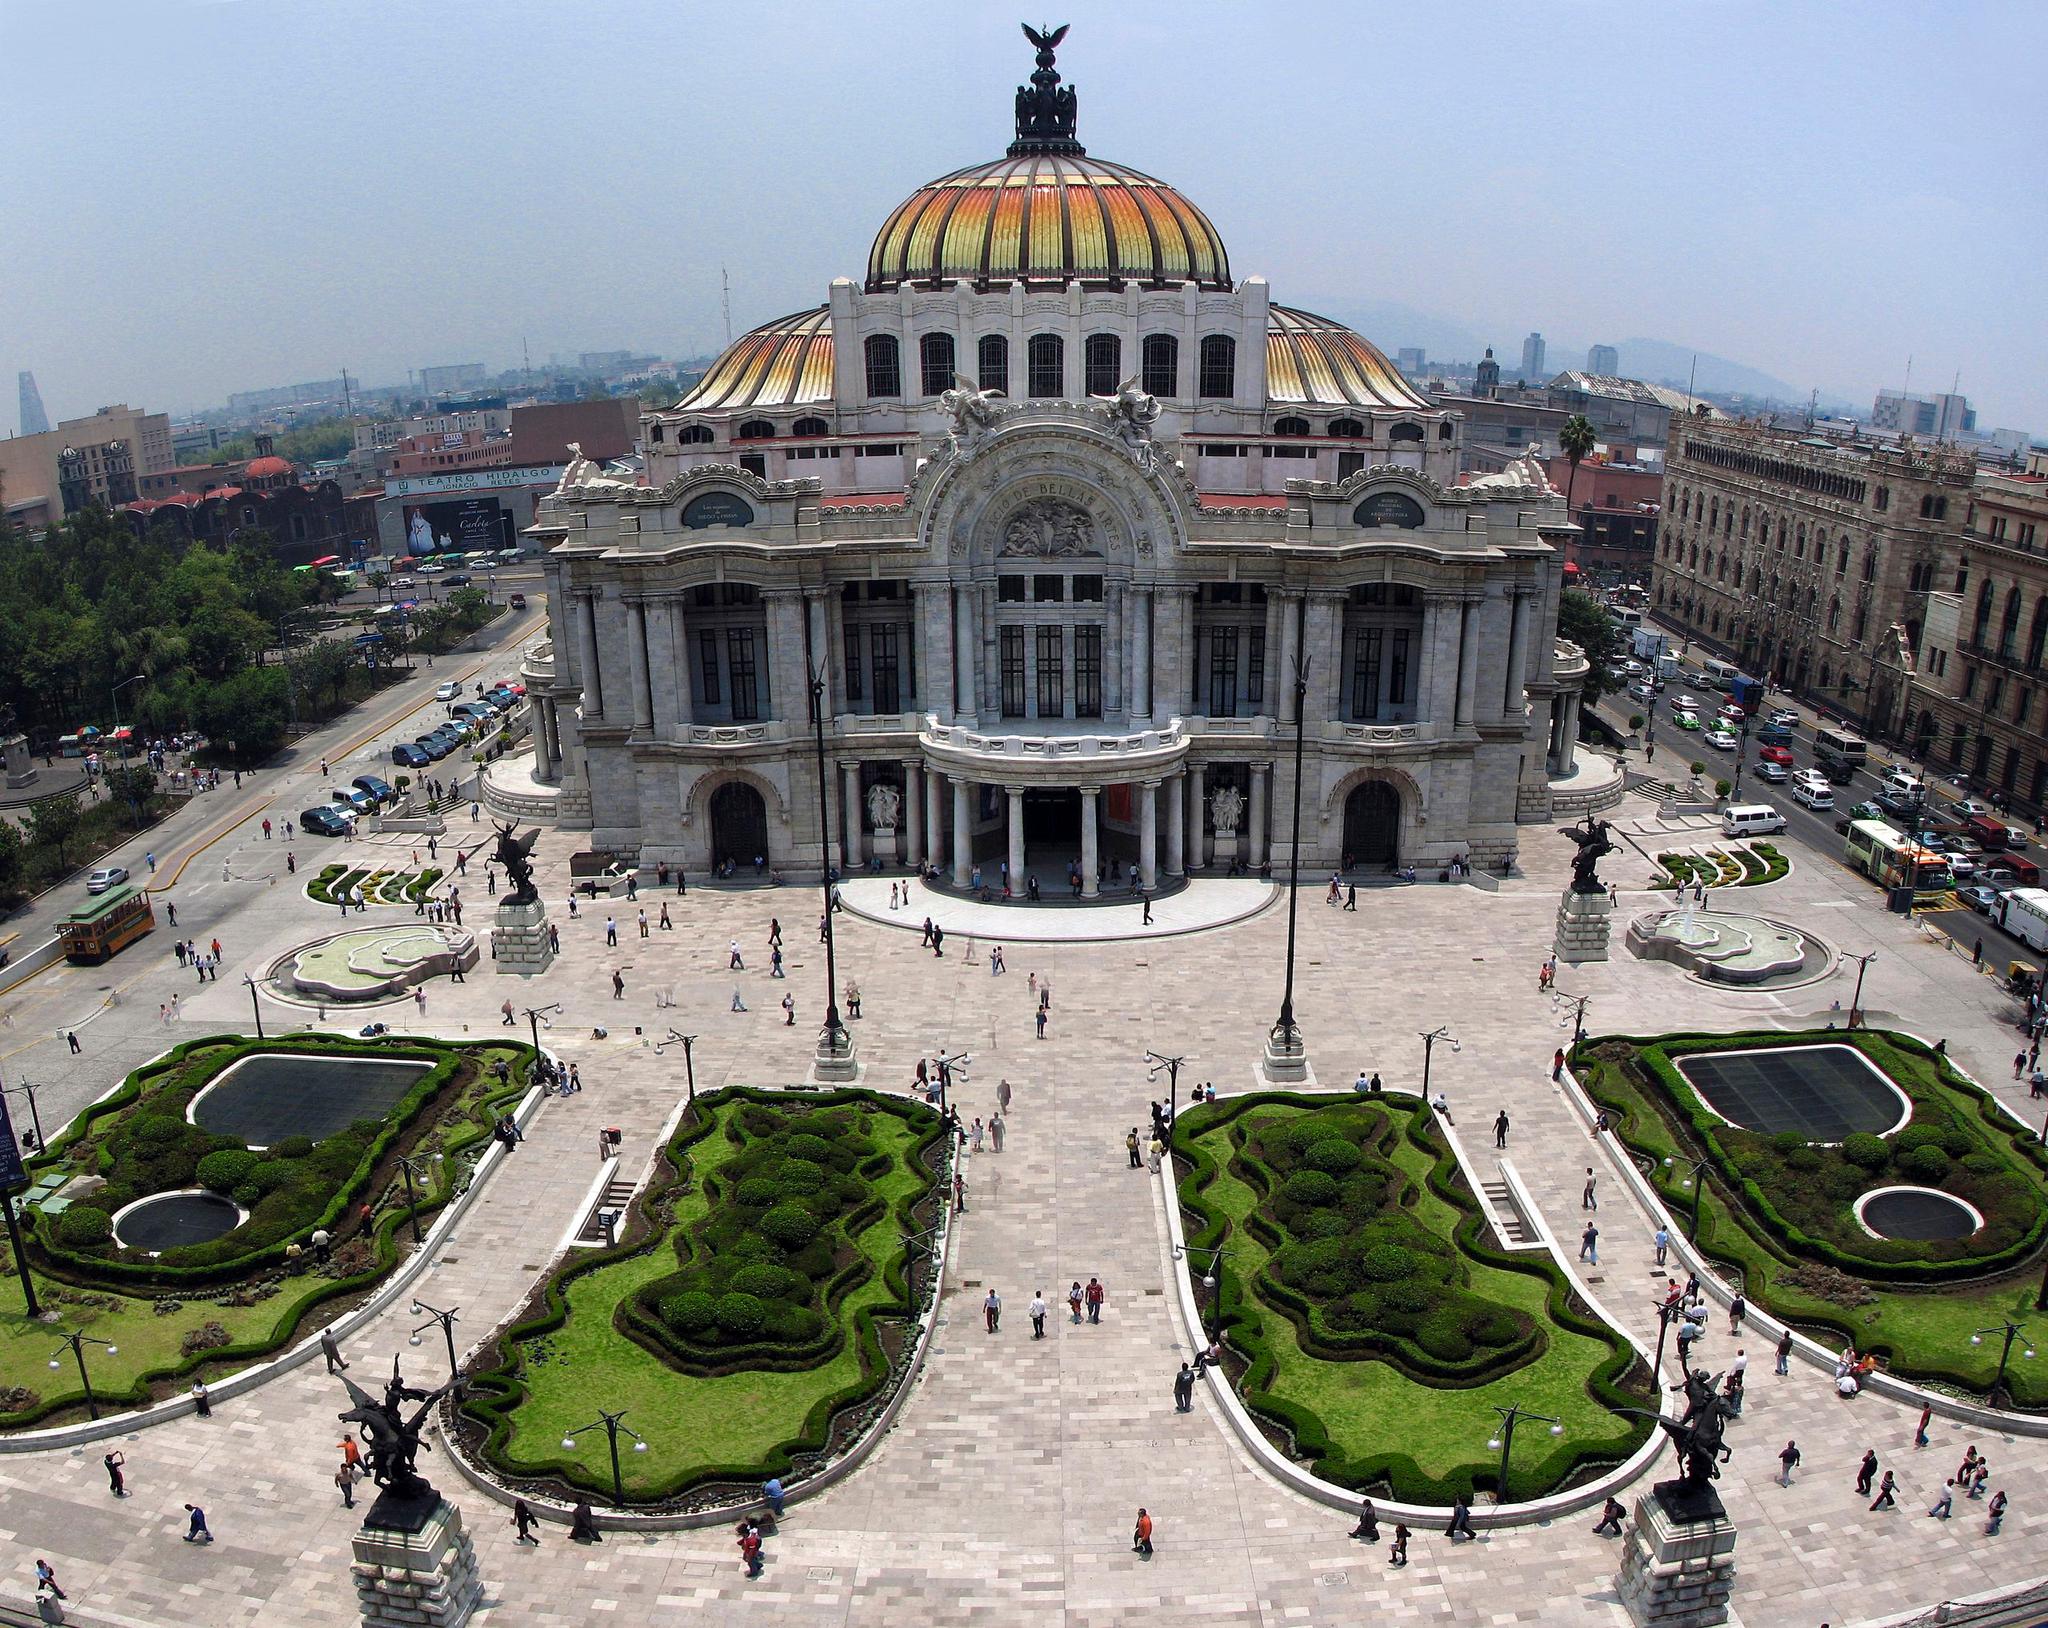 Πόλη του Μεξικού - Παλάτι των Καλών Τεχνών της Πόλης του Μεξικού65b